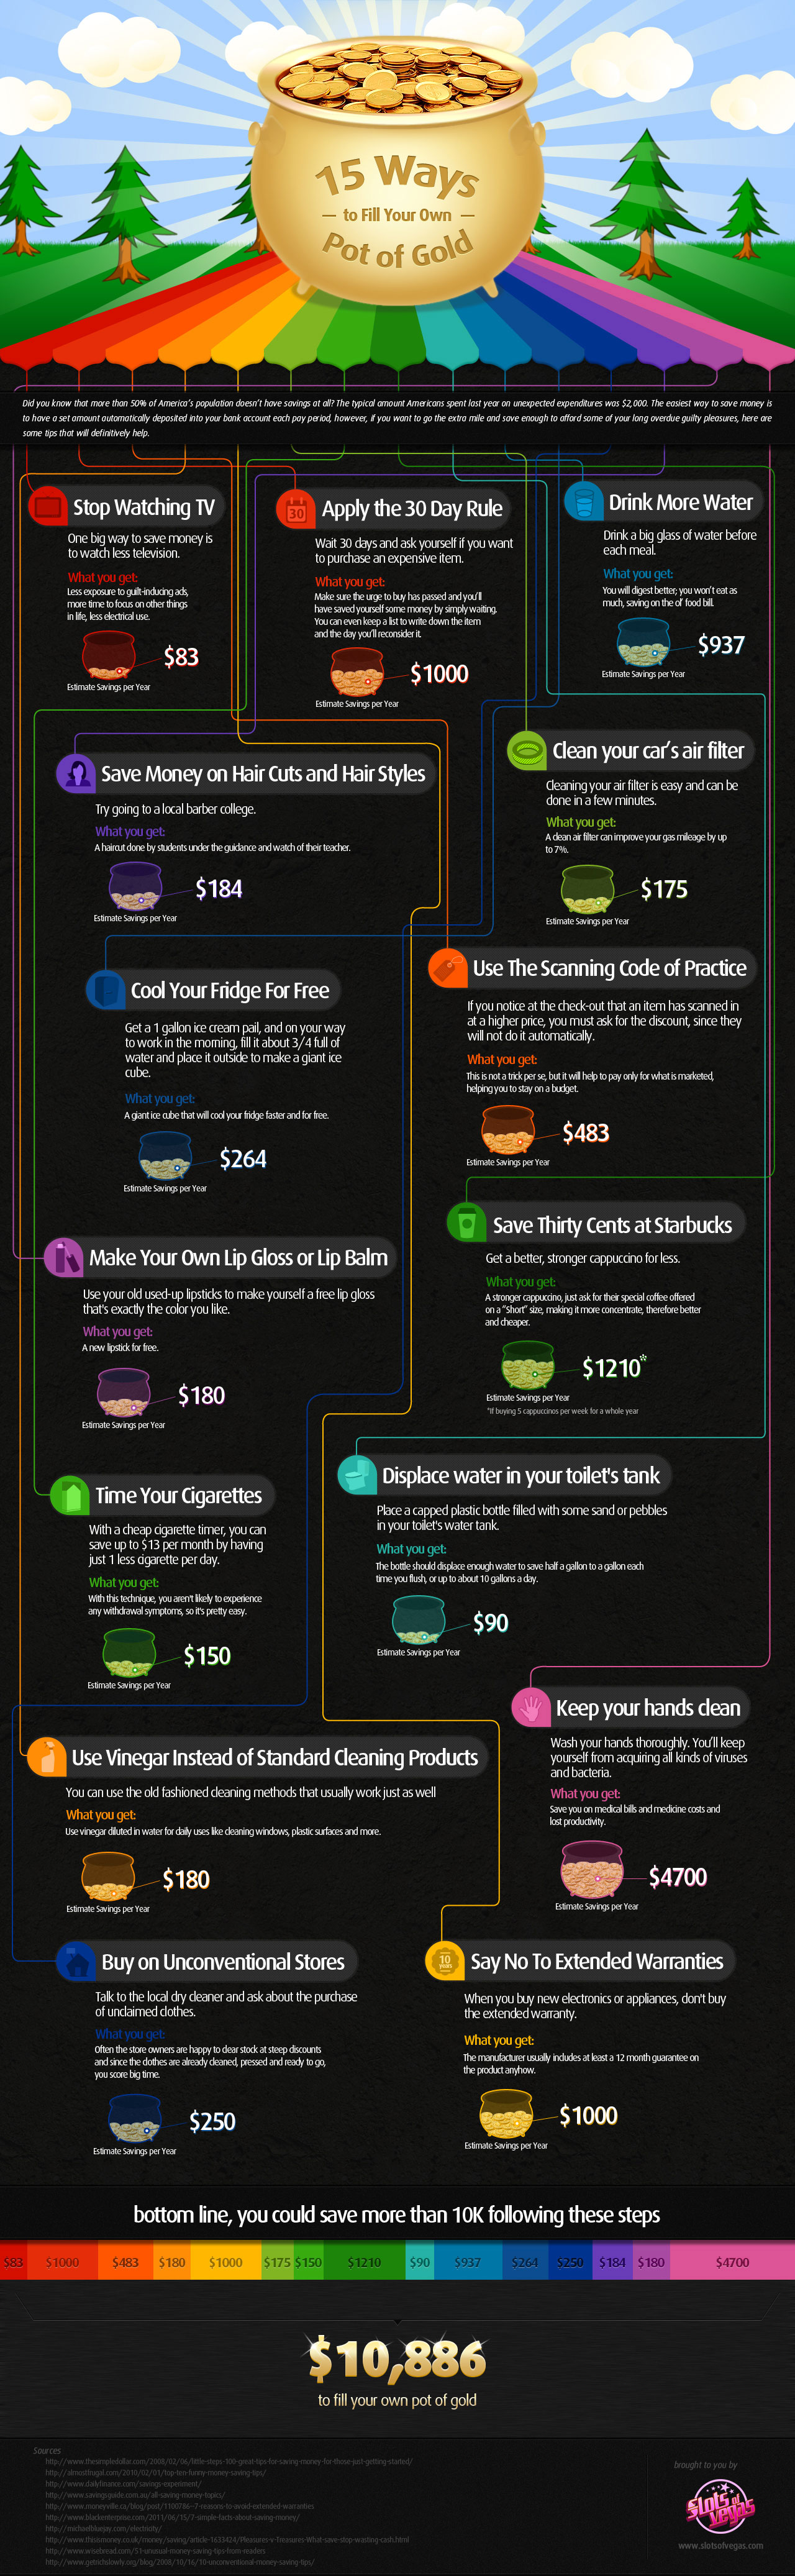 lifestyle-money-hacks-infographic